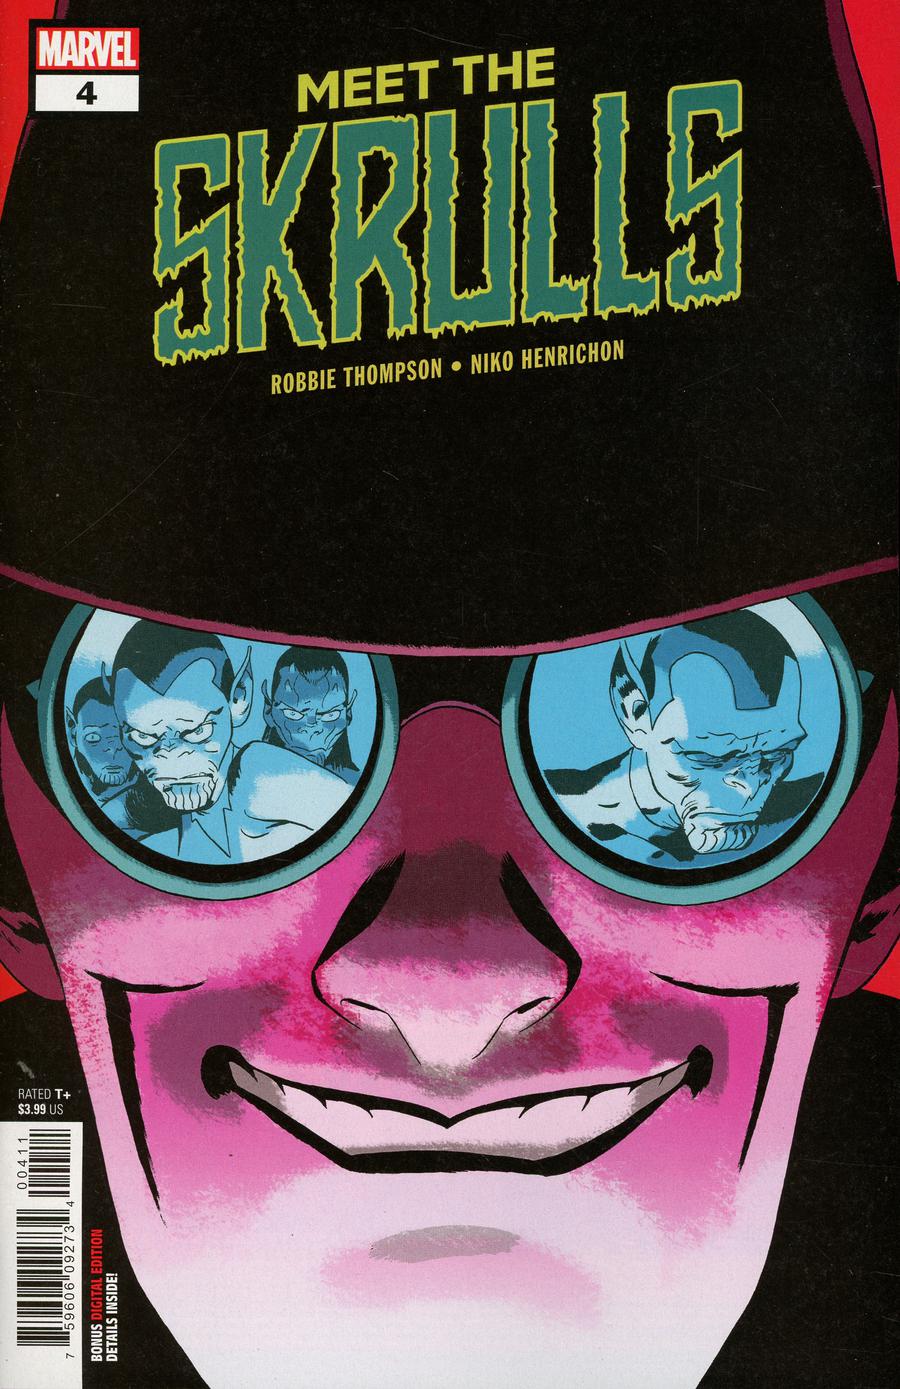 Meet The Skrulls #4